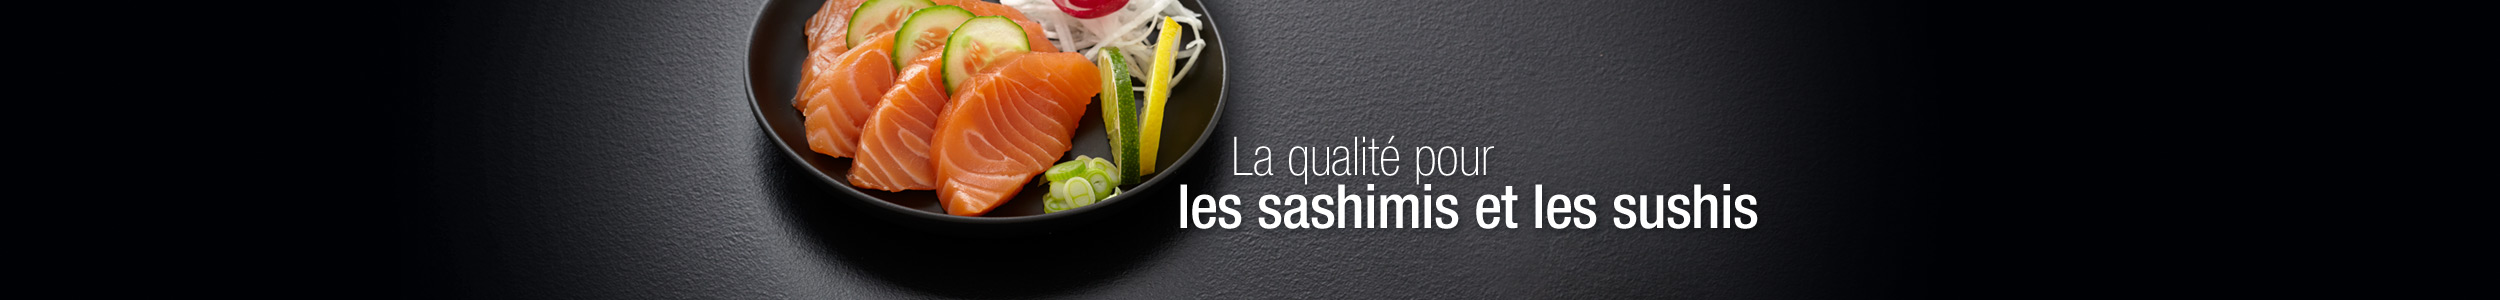 Saumon écossais label rouge, la qualité pour les sashimis et les sushis